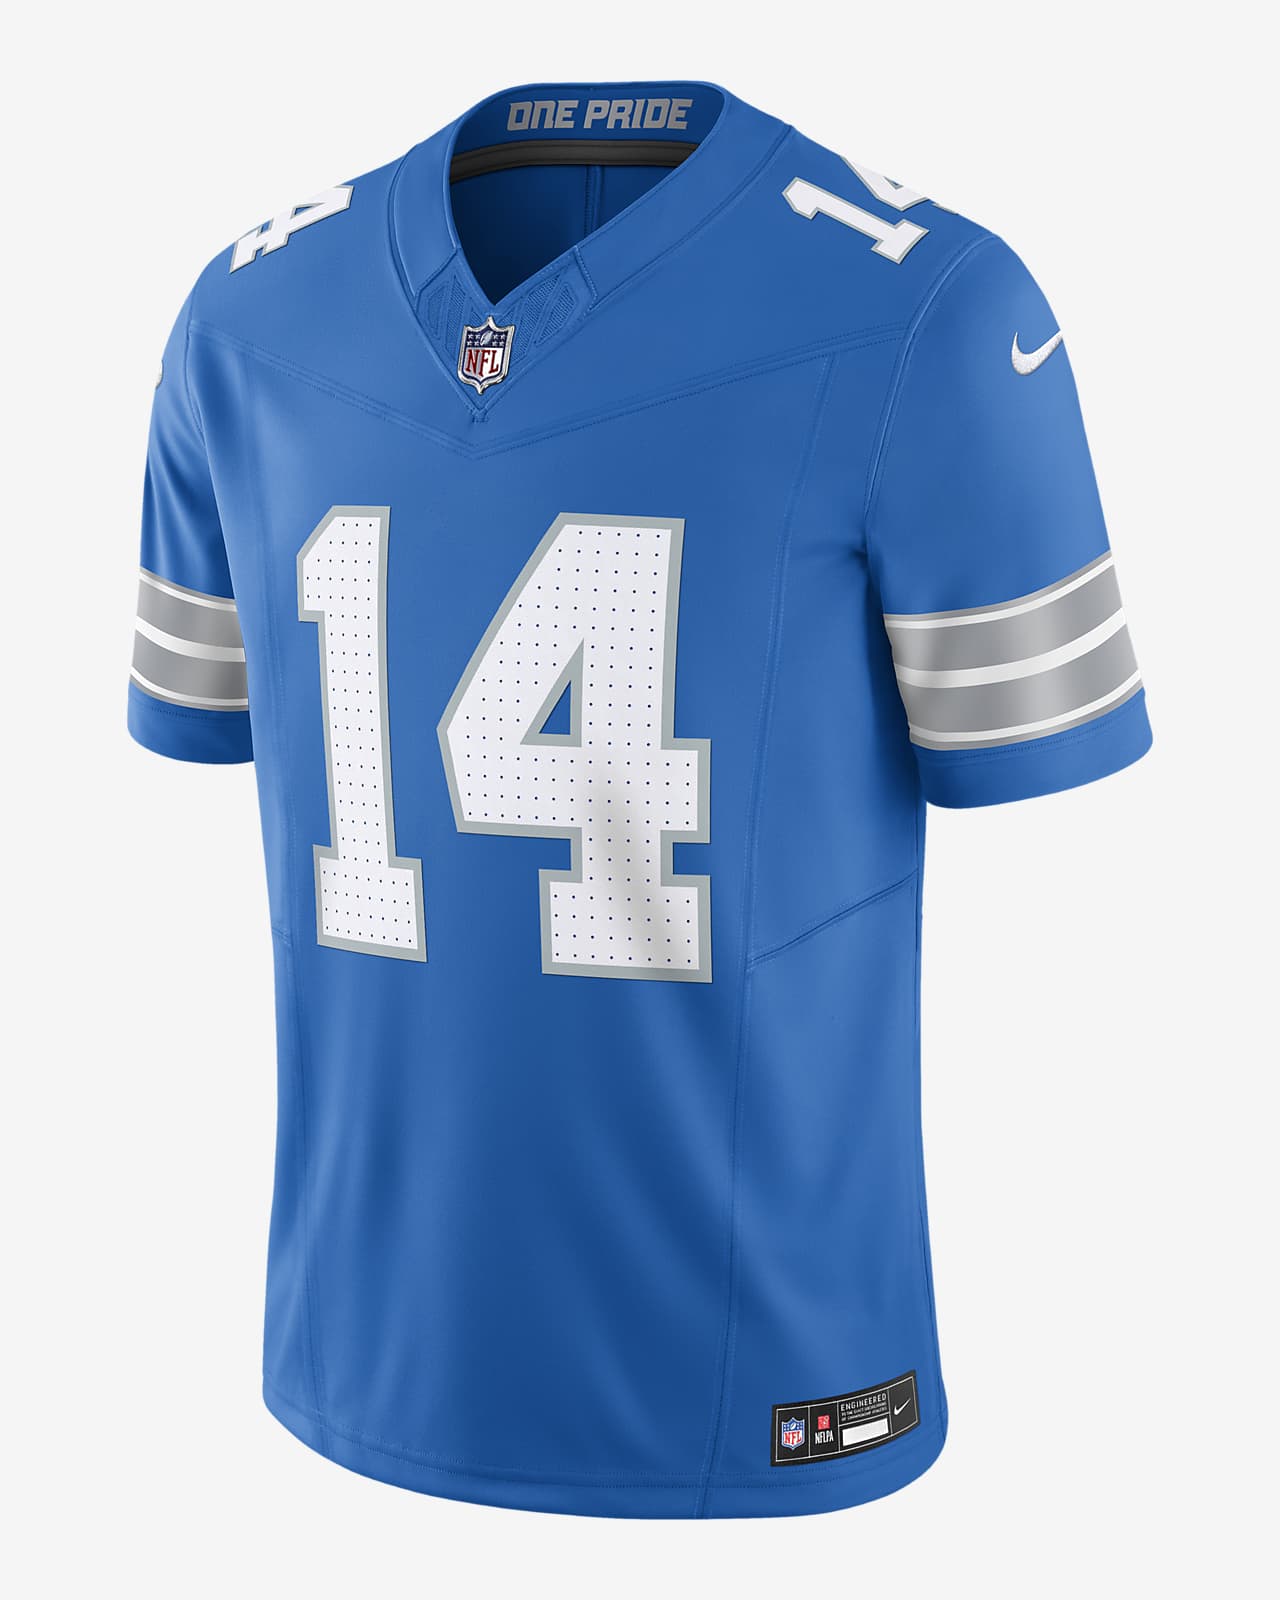 Jersey de fútbol americano Nike Dri-FIT de la NFL Limited para hombre Amon-Ra St. Brown Detroit Lions